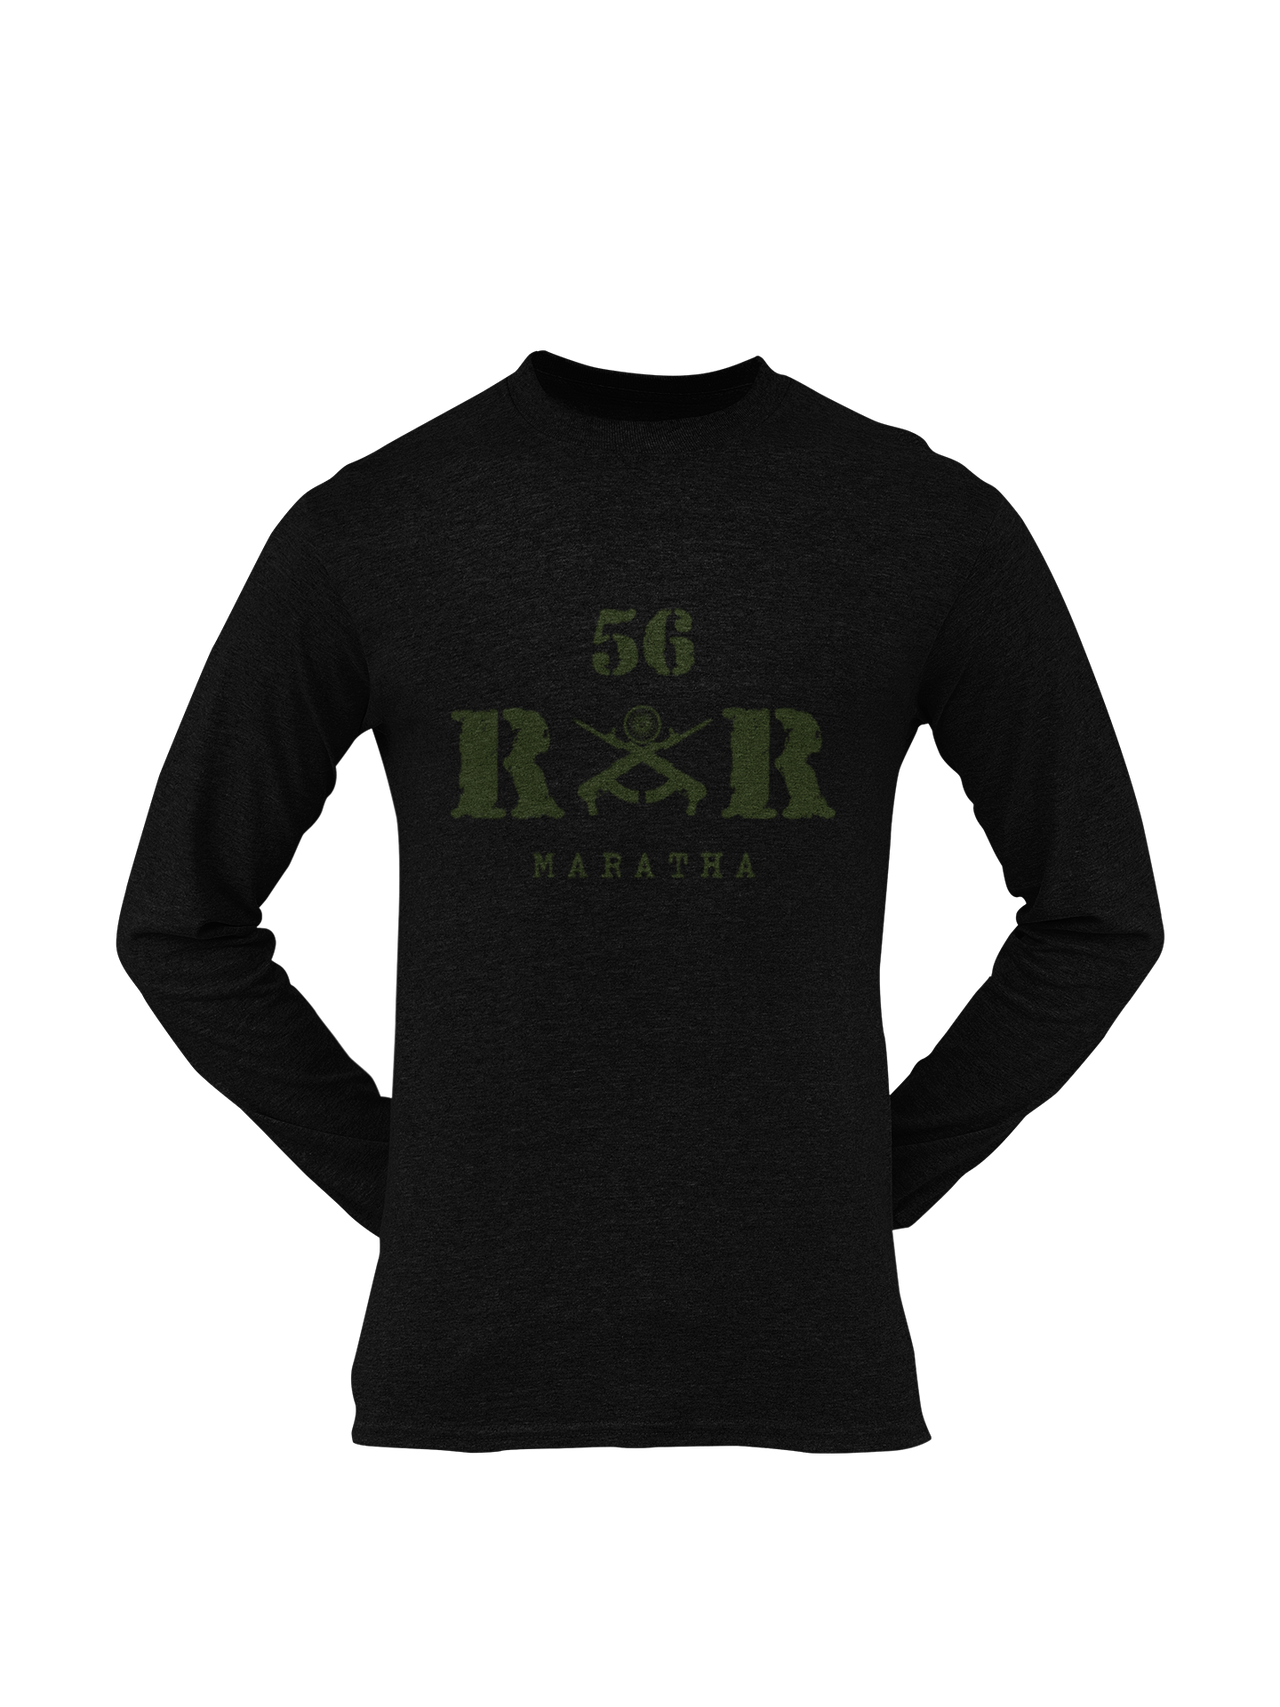 Rashtriya Rifles T-shirt - 56 RR Maratha Li (Men)